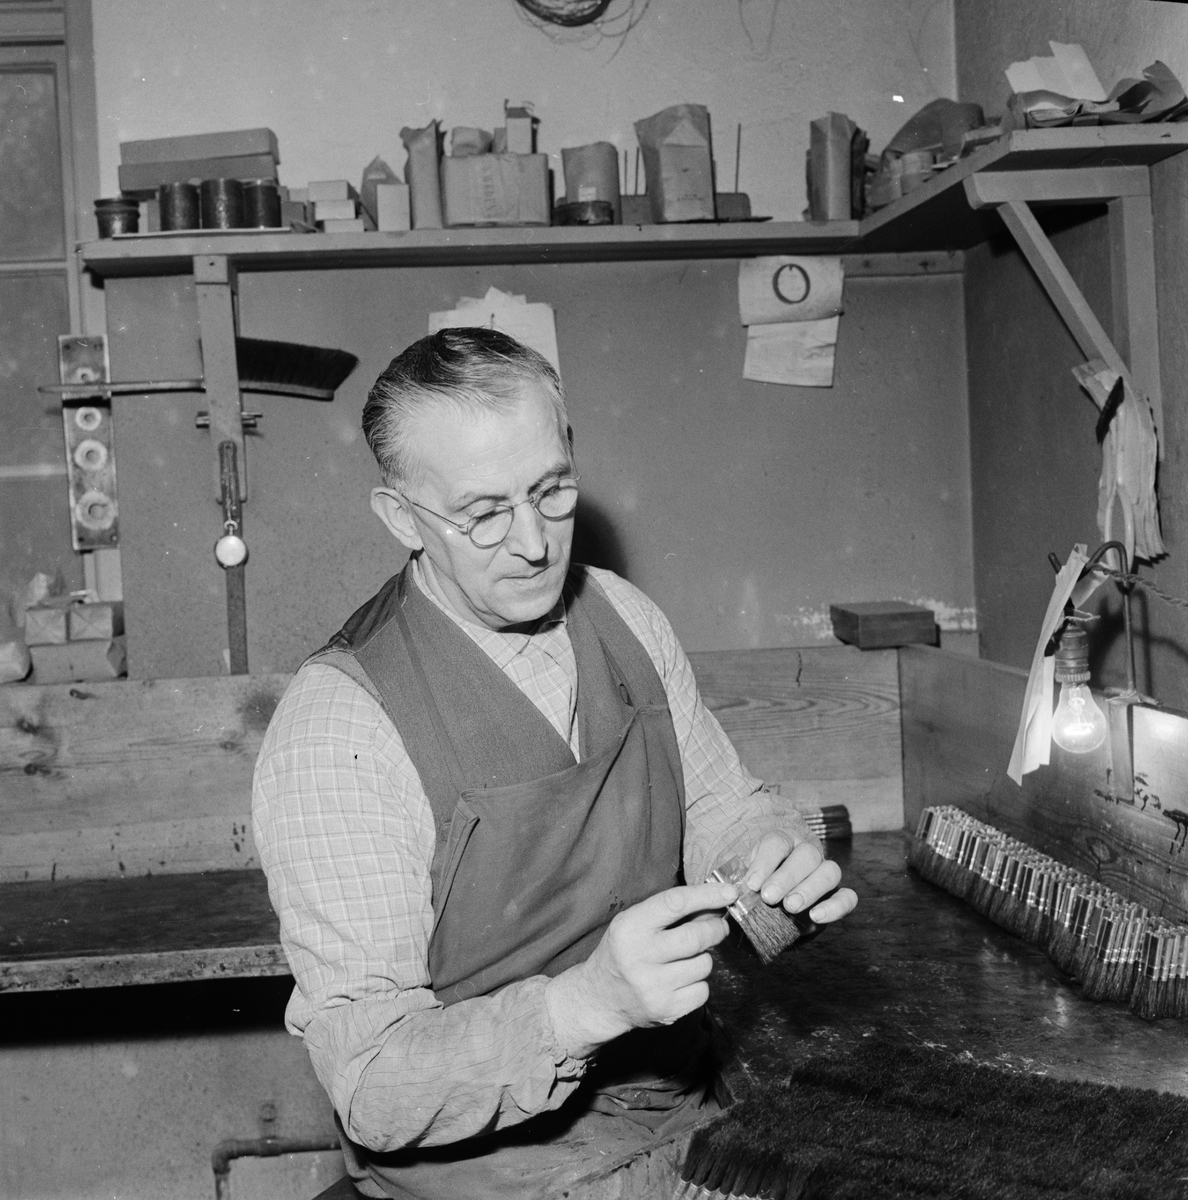 Hantverkarskicklighet präglar borstindustrin, Tierp mars 1959